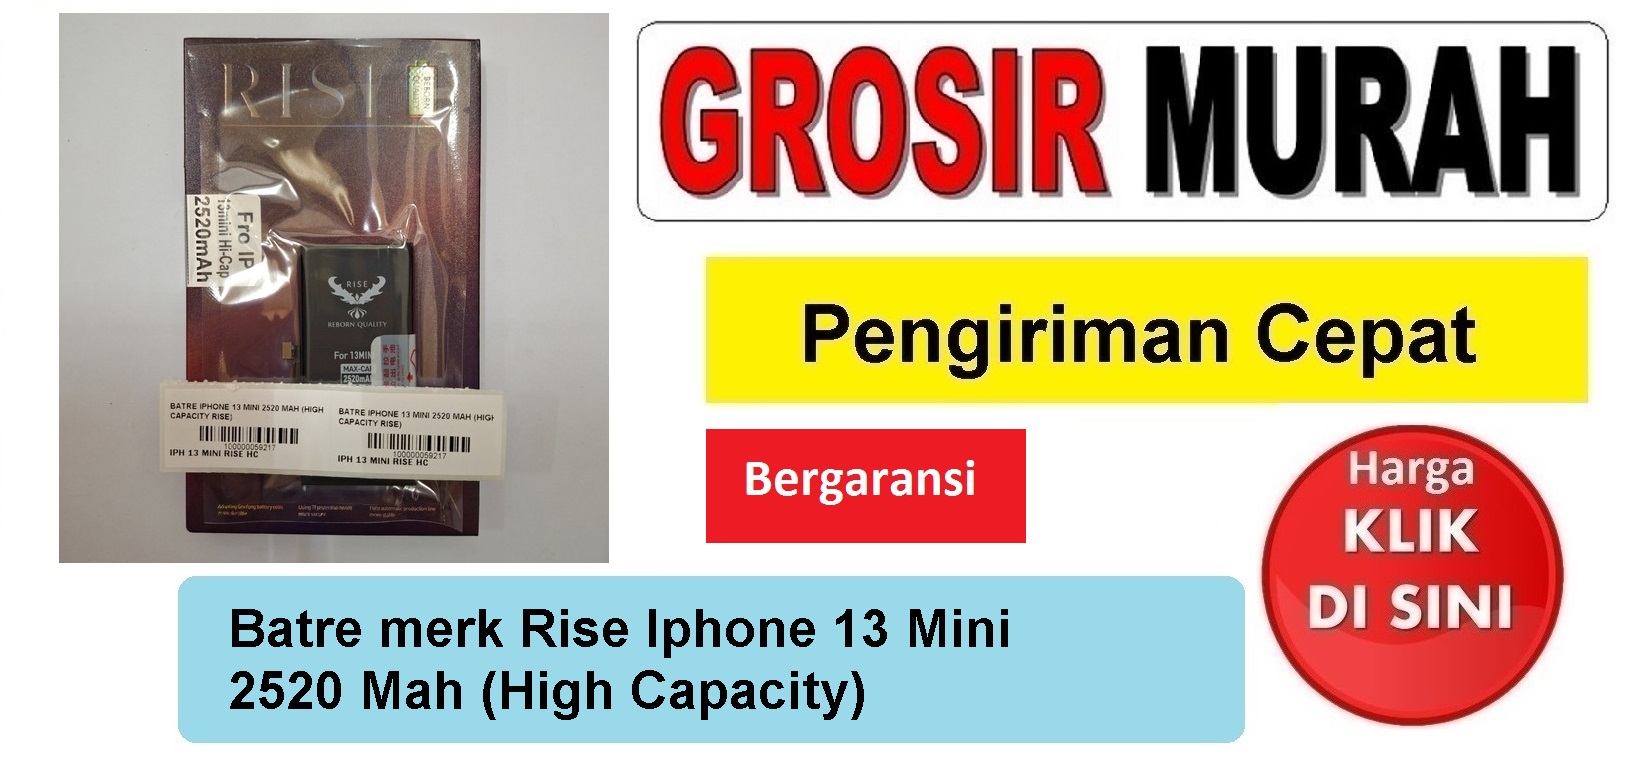 Batre merk Rise Iphone 13 Mini 2520 Mah (High Capacity) Baterai Battery Bergaransi Batere